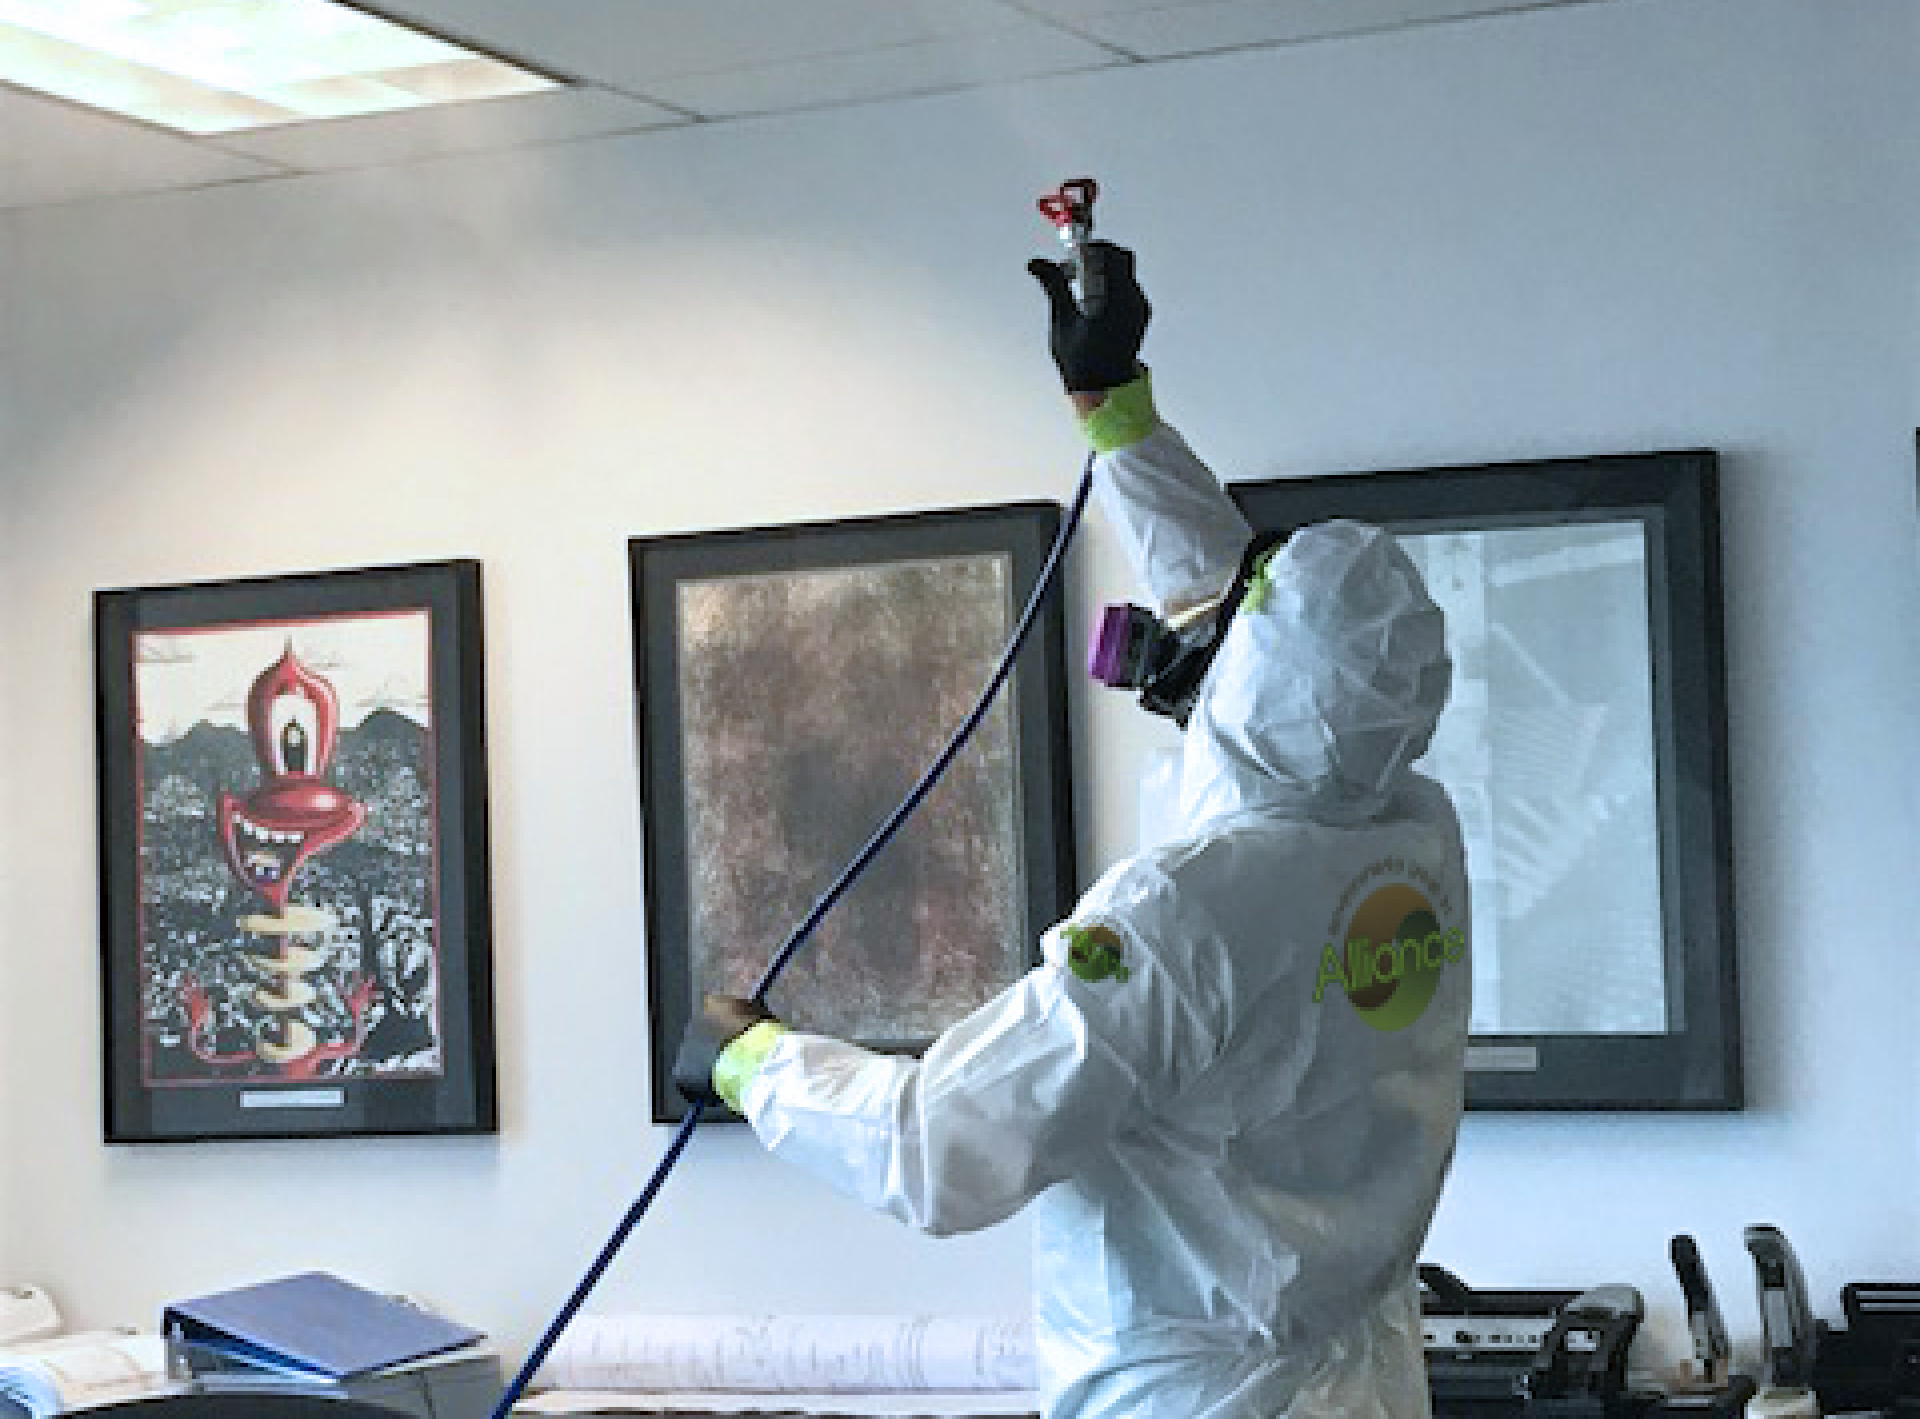 Alliance worker using a BioHazard spray